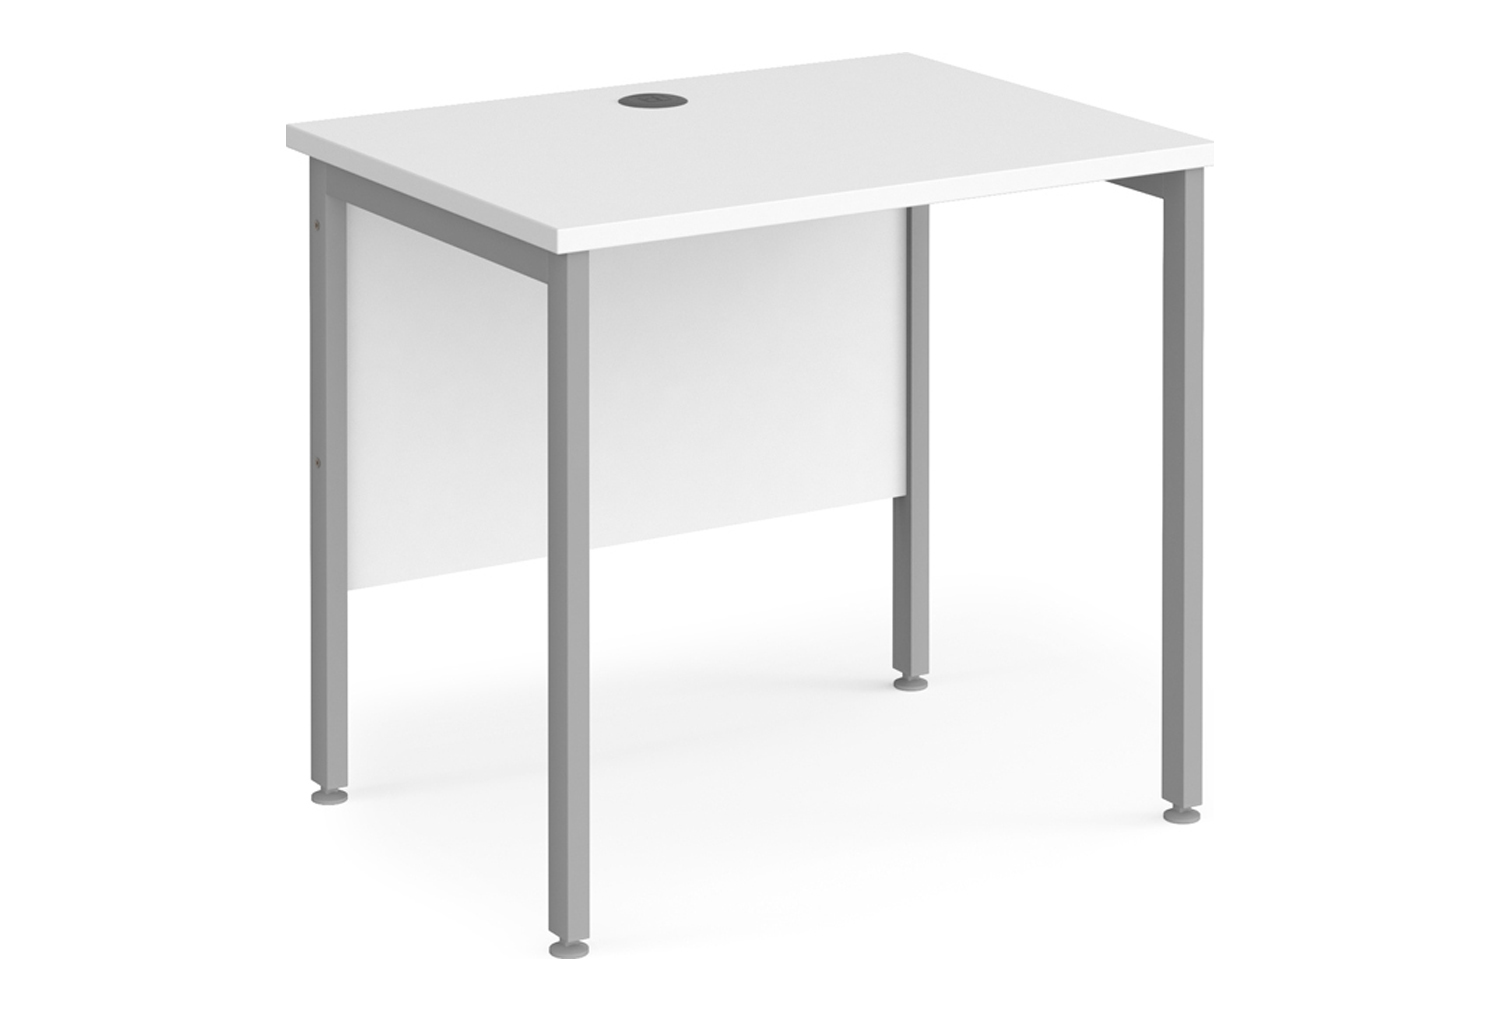 Value Line Deluxe H-Leg Narrow Rectangular Office Desk (Silver Legs), 80wx60dx73h (cm), White